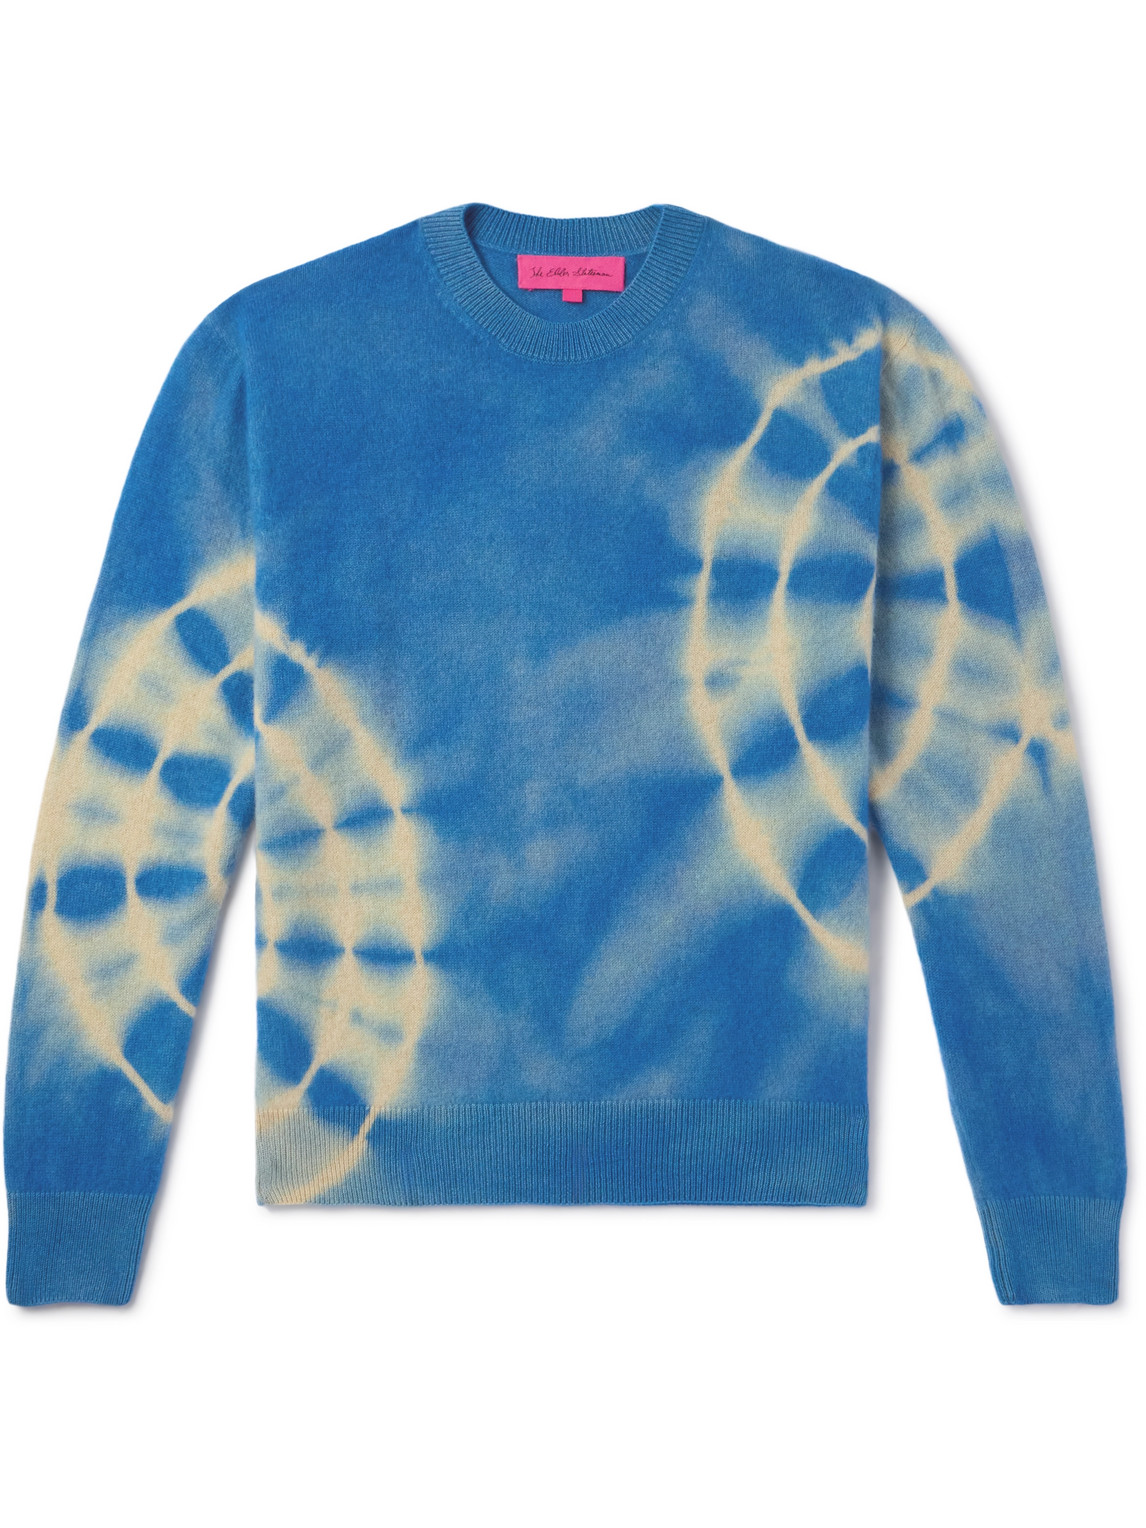 The Elder Statesman - Spiral City Tranquility Tie-Dyed Cashmere Sweater - Men - Blue - L von The Elder Statesman